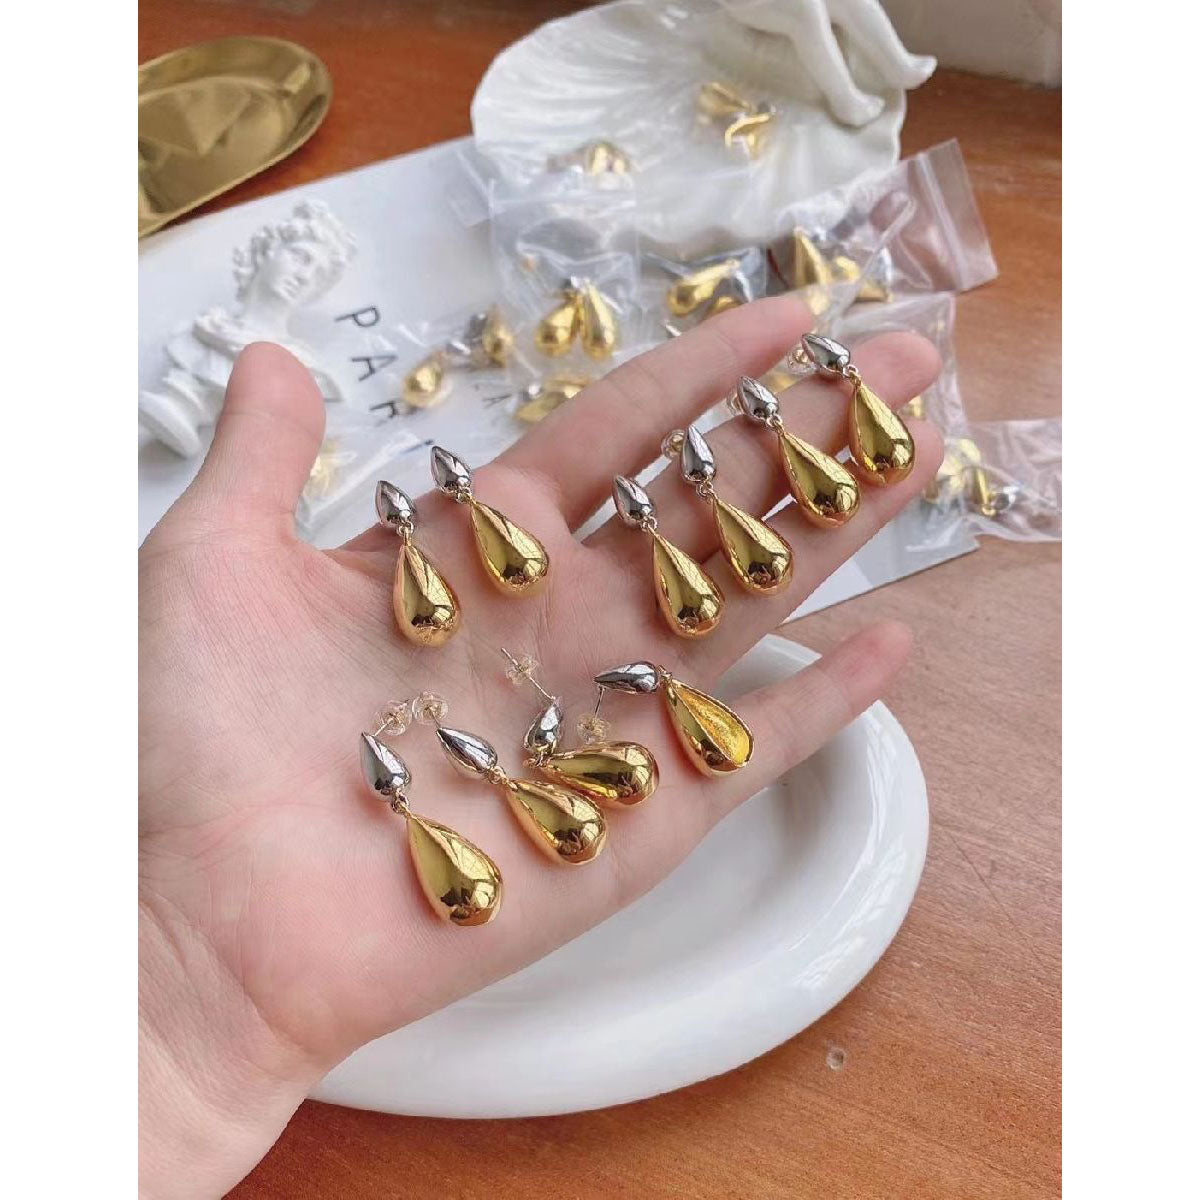 Elsa Peretti™ Teardrop earrings in 18k gold. | Tiffany & Co.